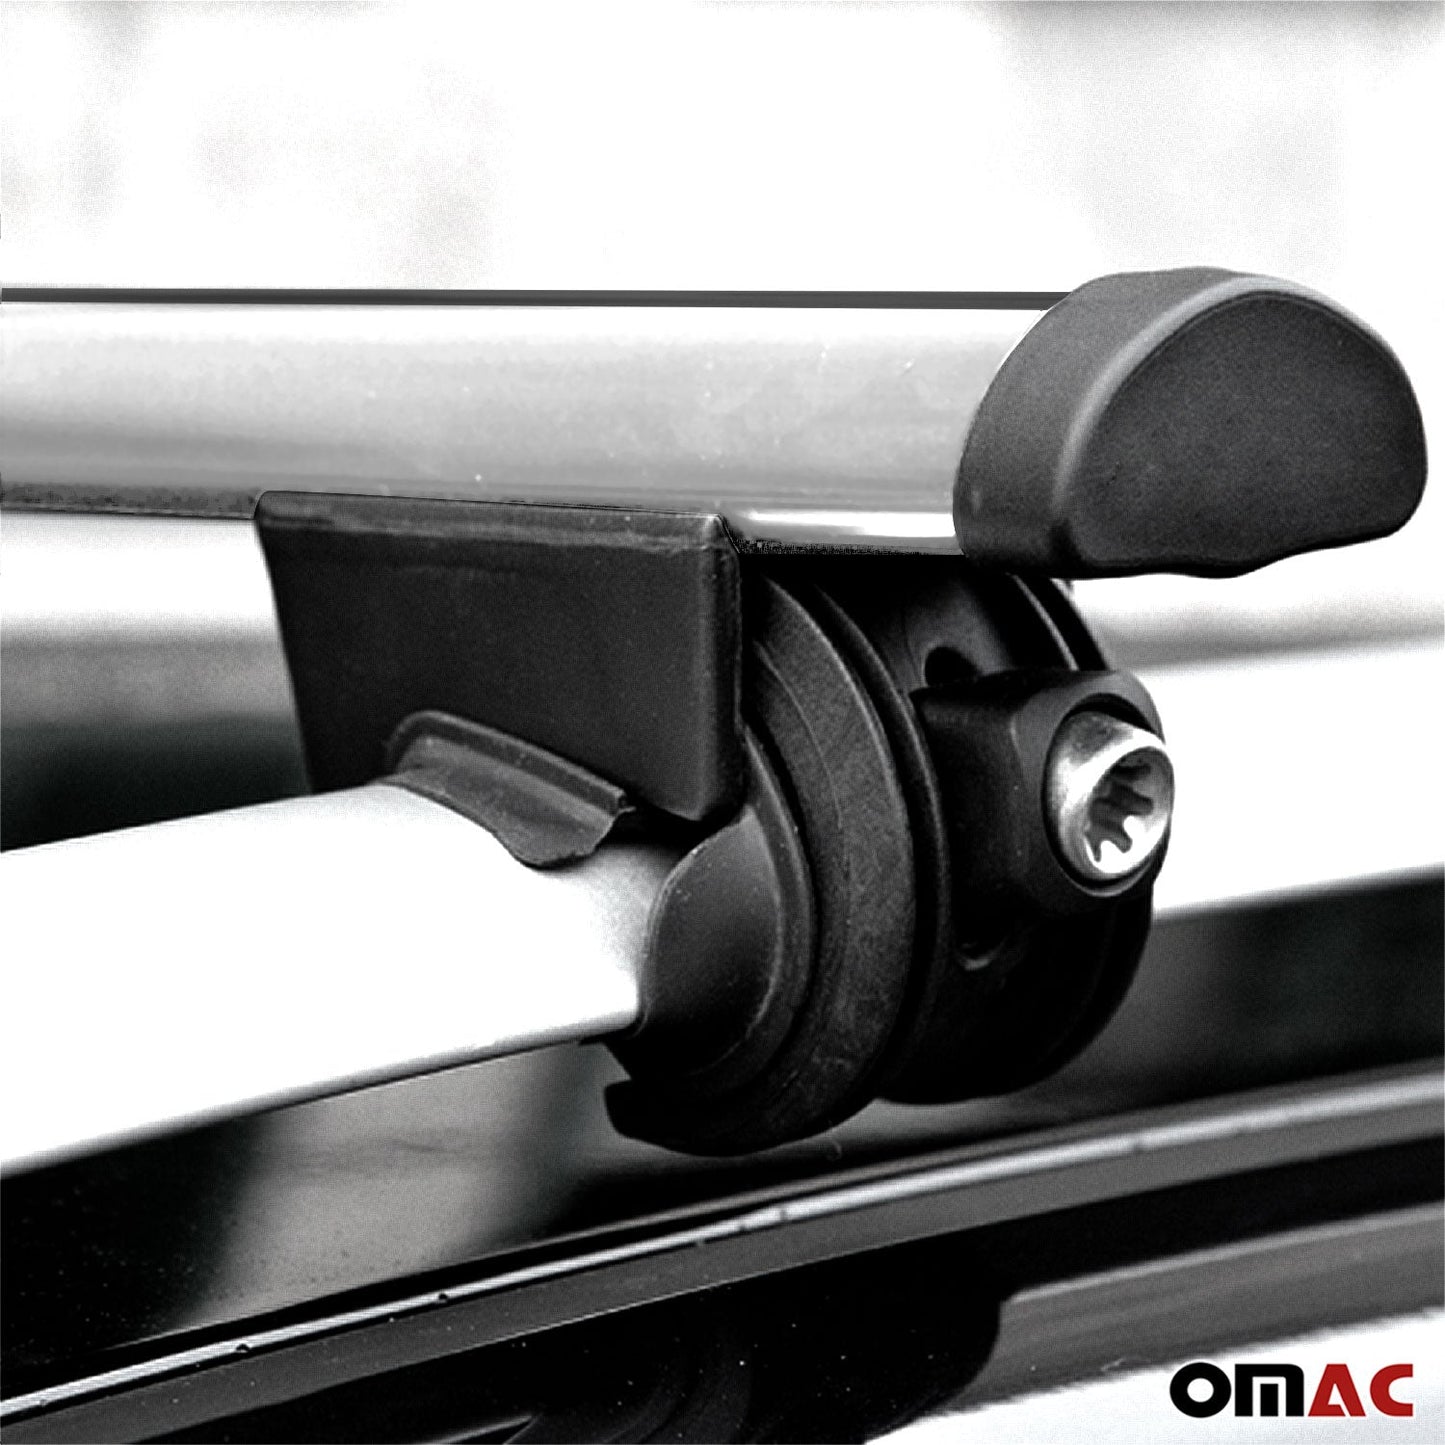 OMAC Roof Rack Cross Bars Lockable for Opel Agila 2000-2008 Aluminium Silver 2Pcs U004360